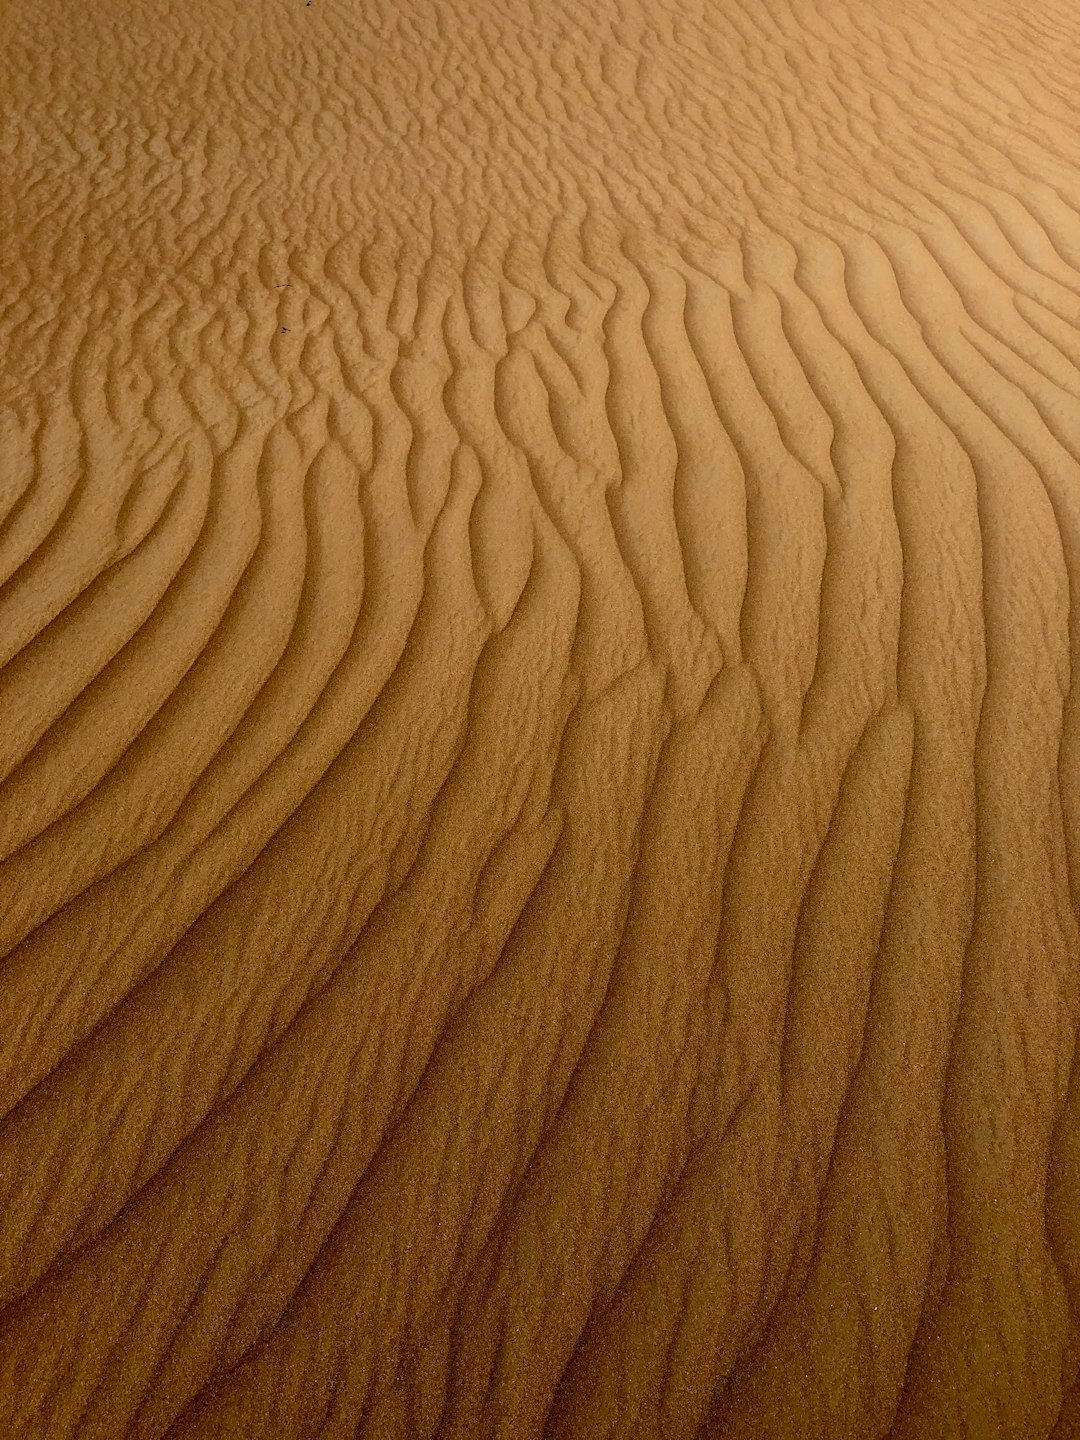 Desert photo spot Margham Al Jazirah Al Hamra - Ras al Khaimah - United Arab Emirates